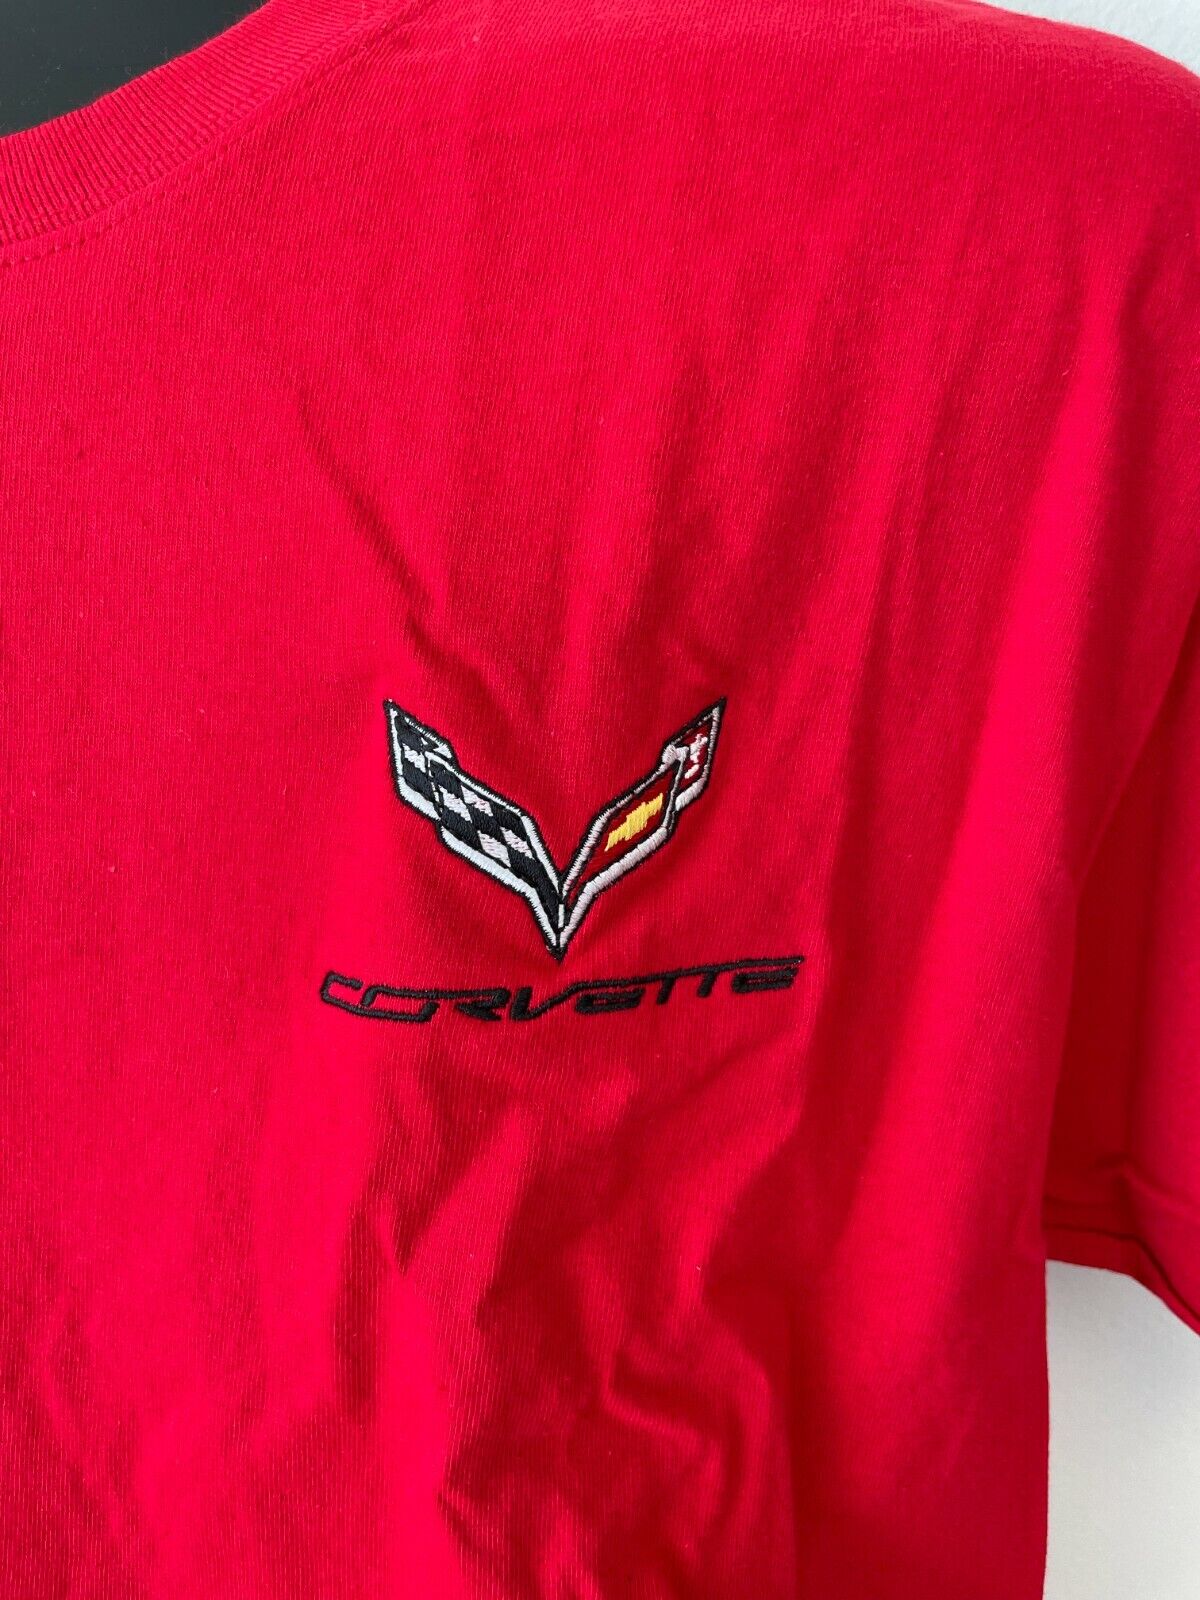 Mens C7 Corvette T-Shirt Red, White, OR Black